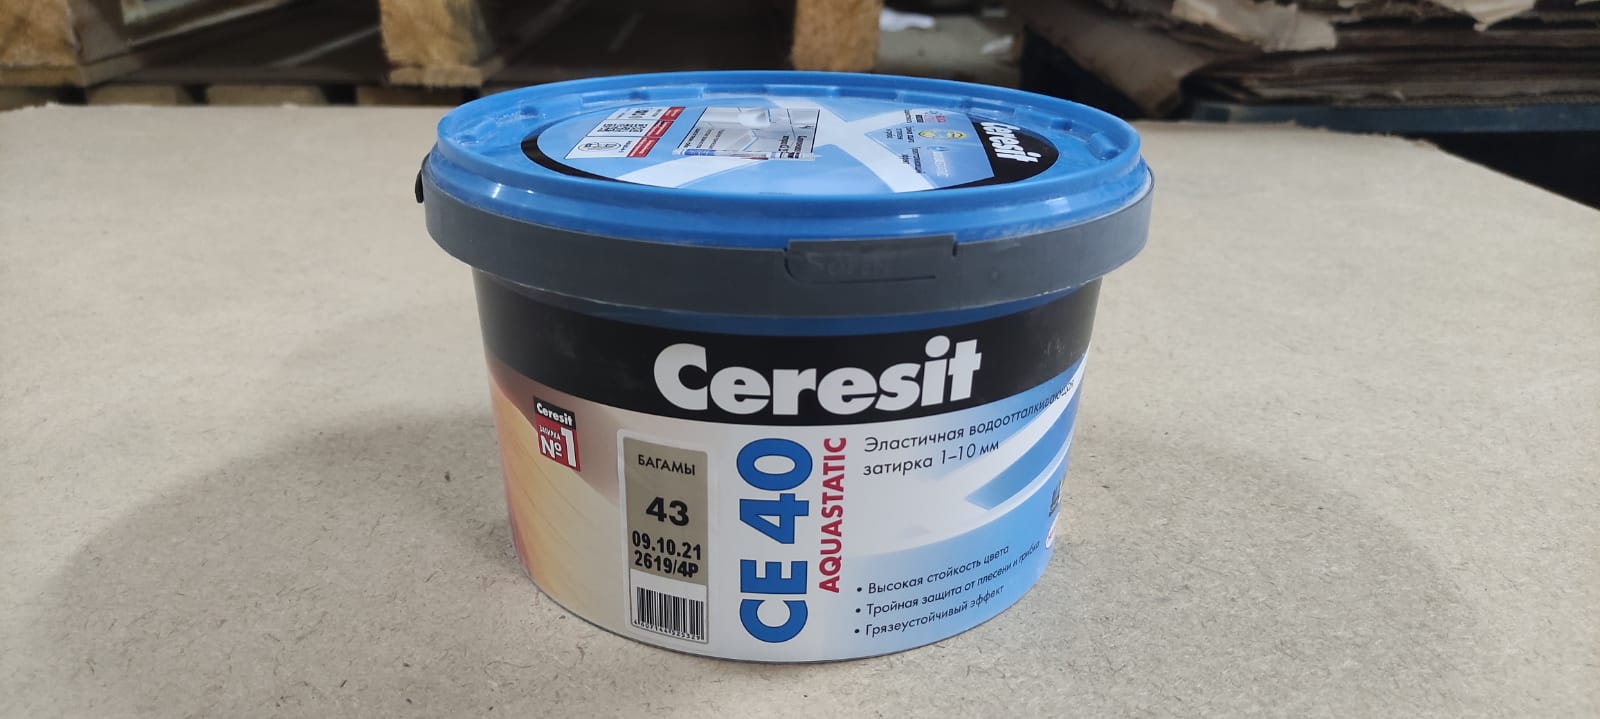 Эластичная водоотталкивающая затирка Ceresit CE 40 aquastatic 2 кг (цвет: багамы)								